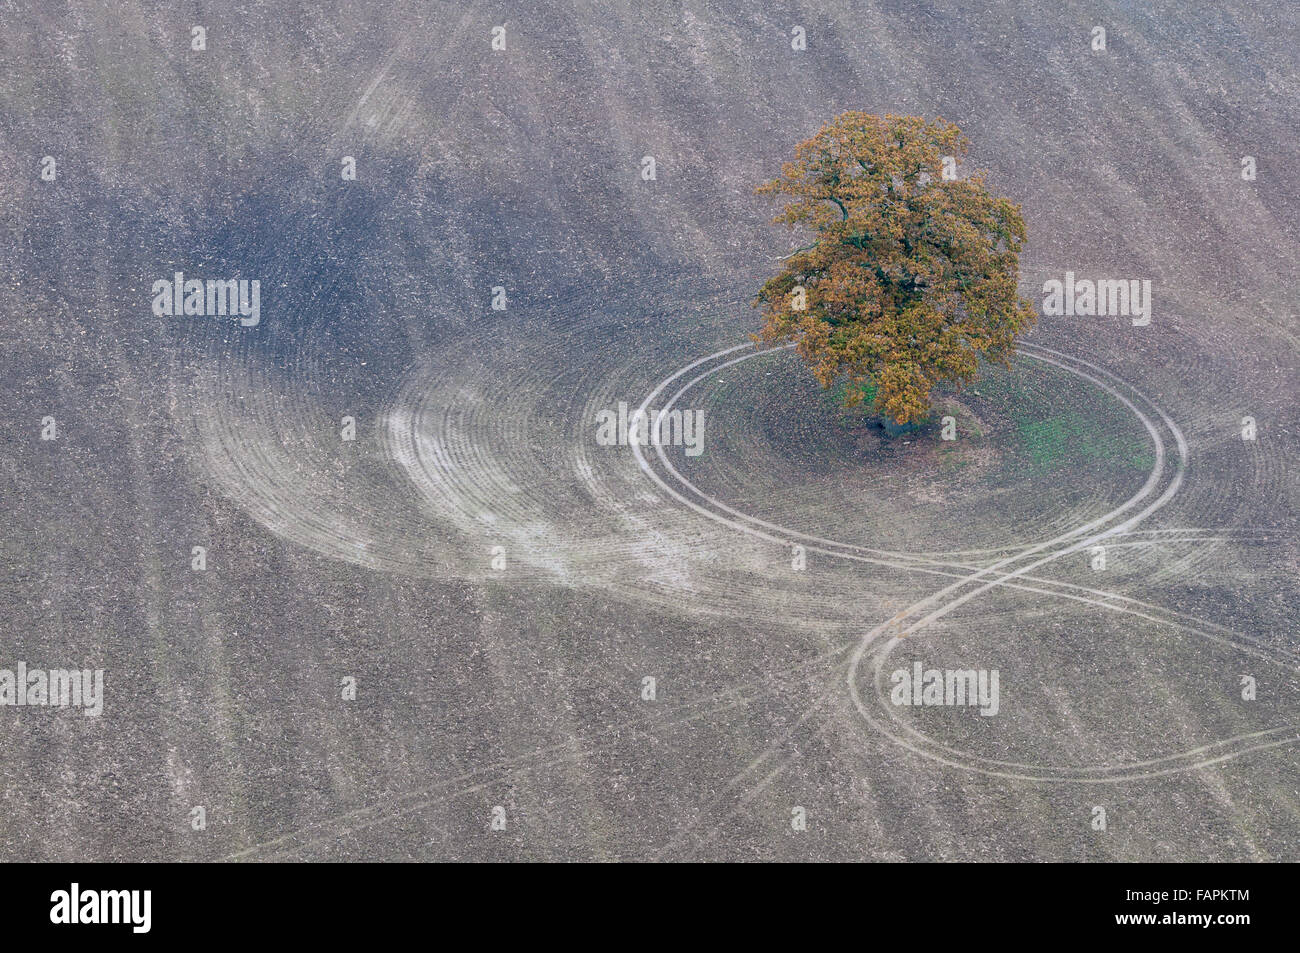 Vista aerea di un albero e un campo arato con i cingoli del trattore attorno ad esso Foto Stock